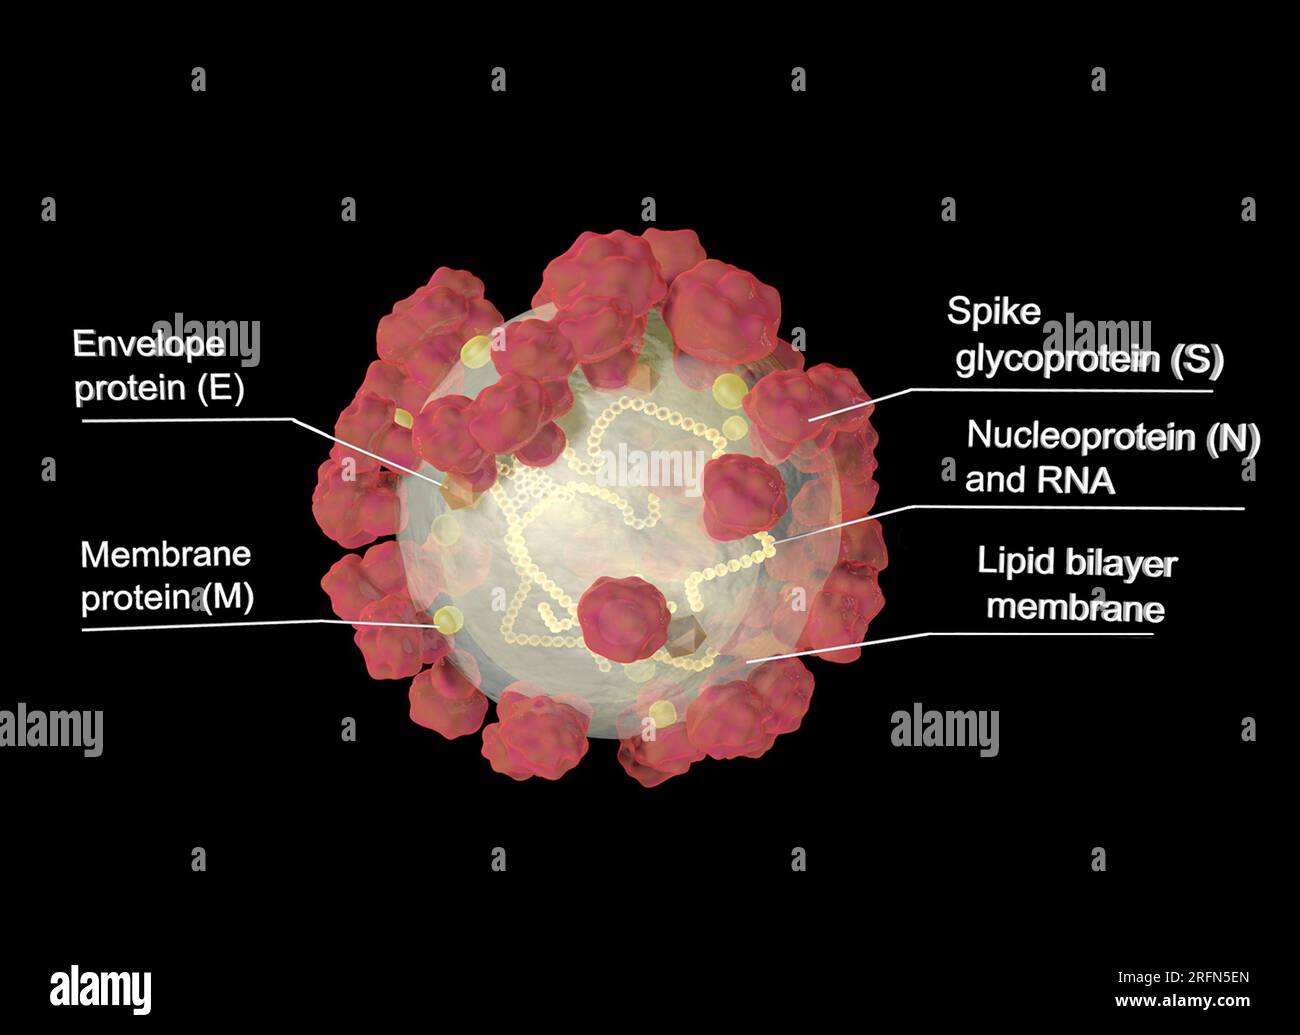 La enfermedad por coronavirus (COVID-19) es una enfermedad infecciosa causada por el virus SARS-CoV-2. El virus SARS-CoV-2 consiste en cuatro proteínas diferentes y una cadena de ARN. La proteína “Spike” (S) sobresale de la membrana, dando al virus su apariencia distintiva de 'corona'. Otras dos proteínas, la proteína envolvente (E) y la proteína de membrana (M), se encuentran en toda la membrana para proporcionar integridad estructural. Finalmente, dentro del virus, la nucleoproteína (N) actúa como un andamiaje para los 29.900 nucleótidos de ARN que componen el genoma viral. Foto de stock